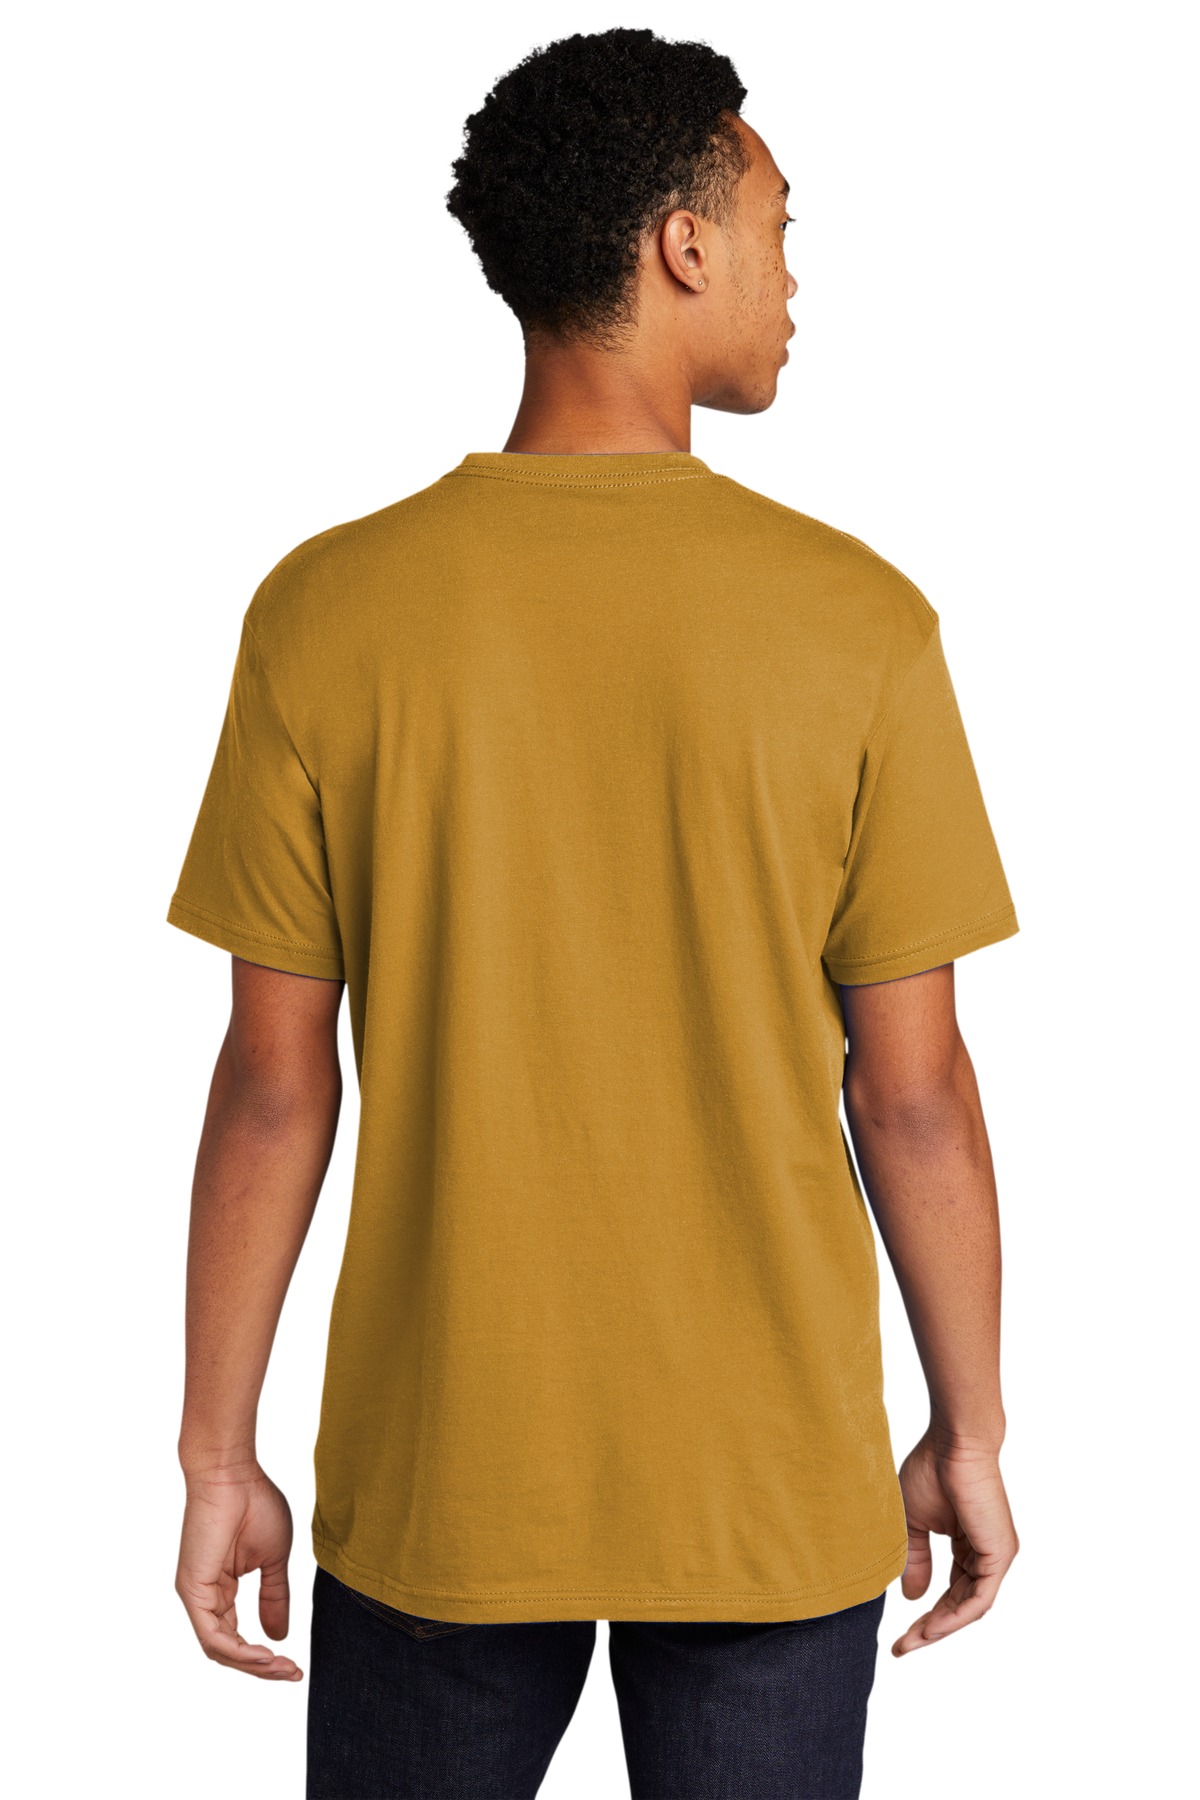 Next Level 3600 Unisex Cotton T-Shirt - Antique Gold - Xs